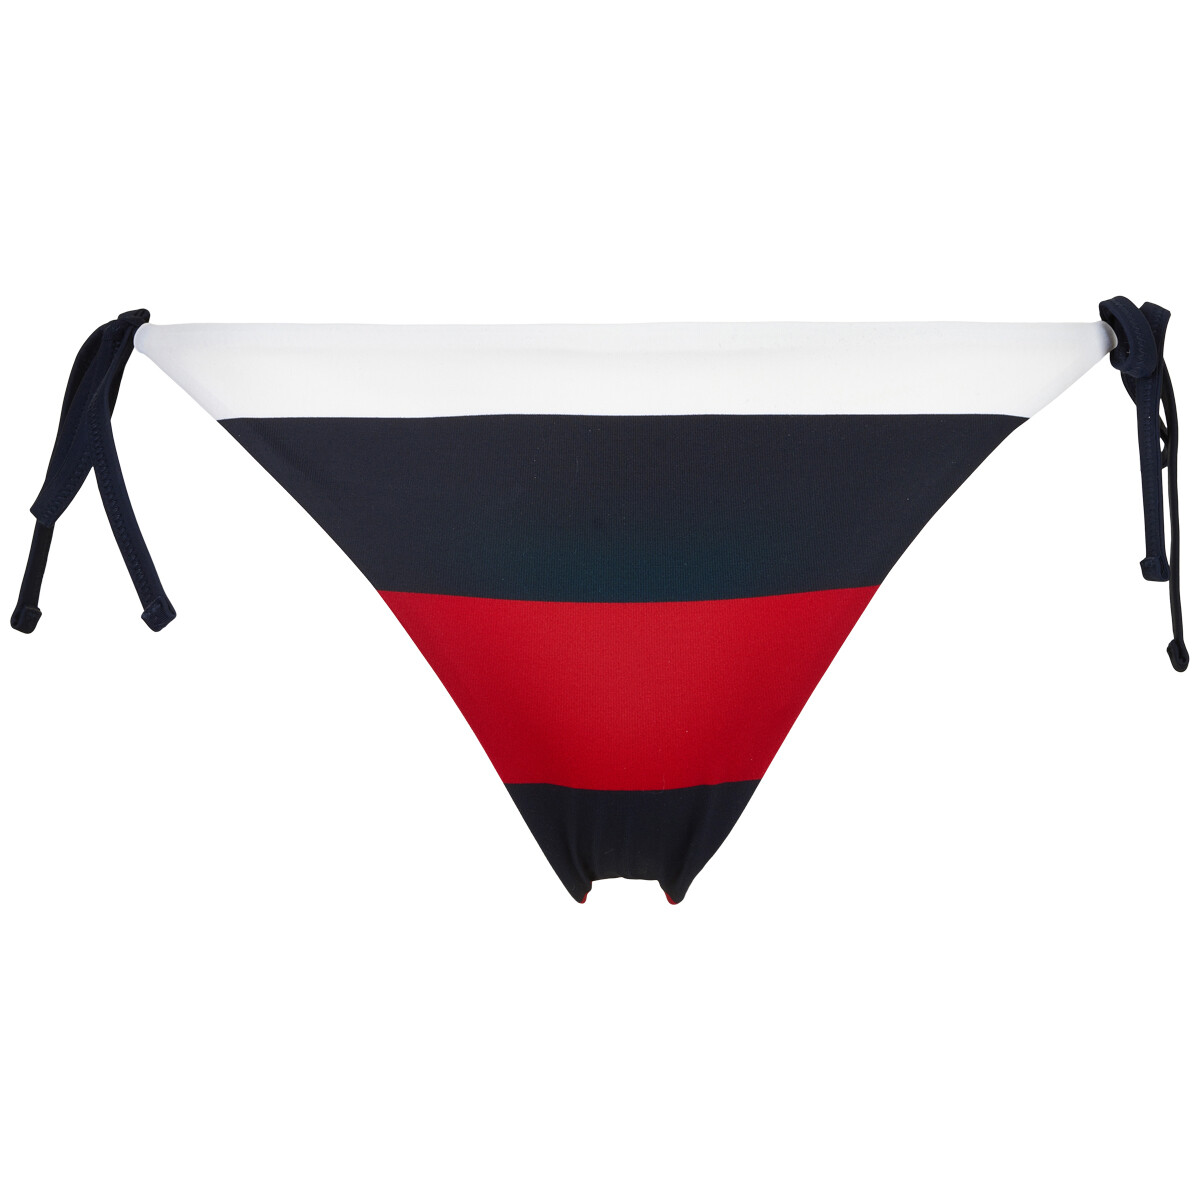 Tommy Hilfiger G-streng Side Tie Cheeky Bikini Trusse, Farve: Rugby Stripe, Størrelse: L, Dame